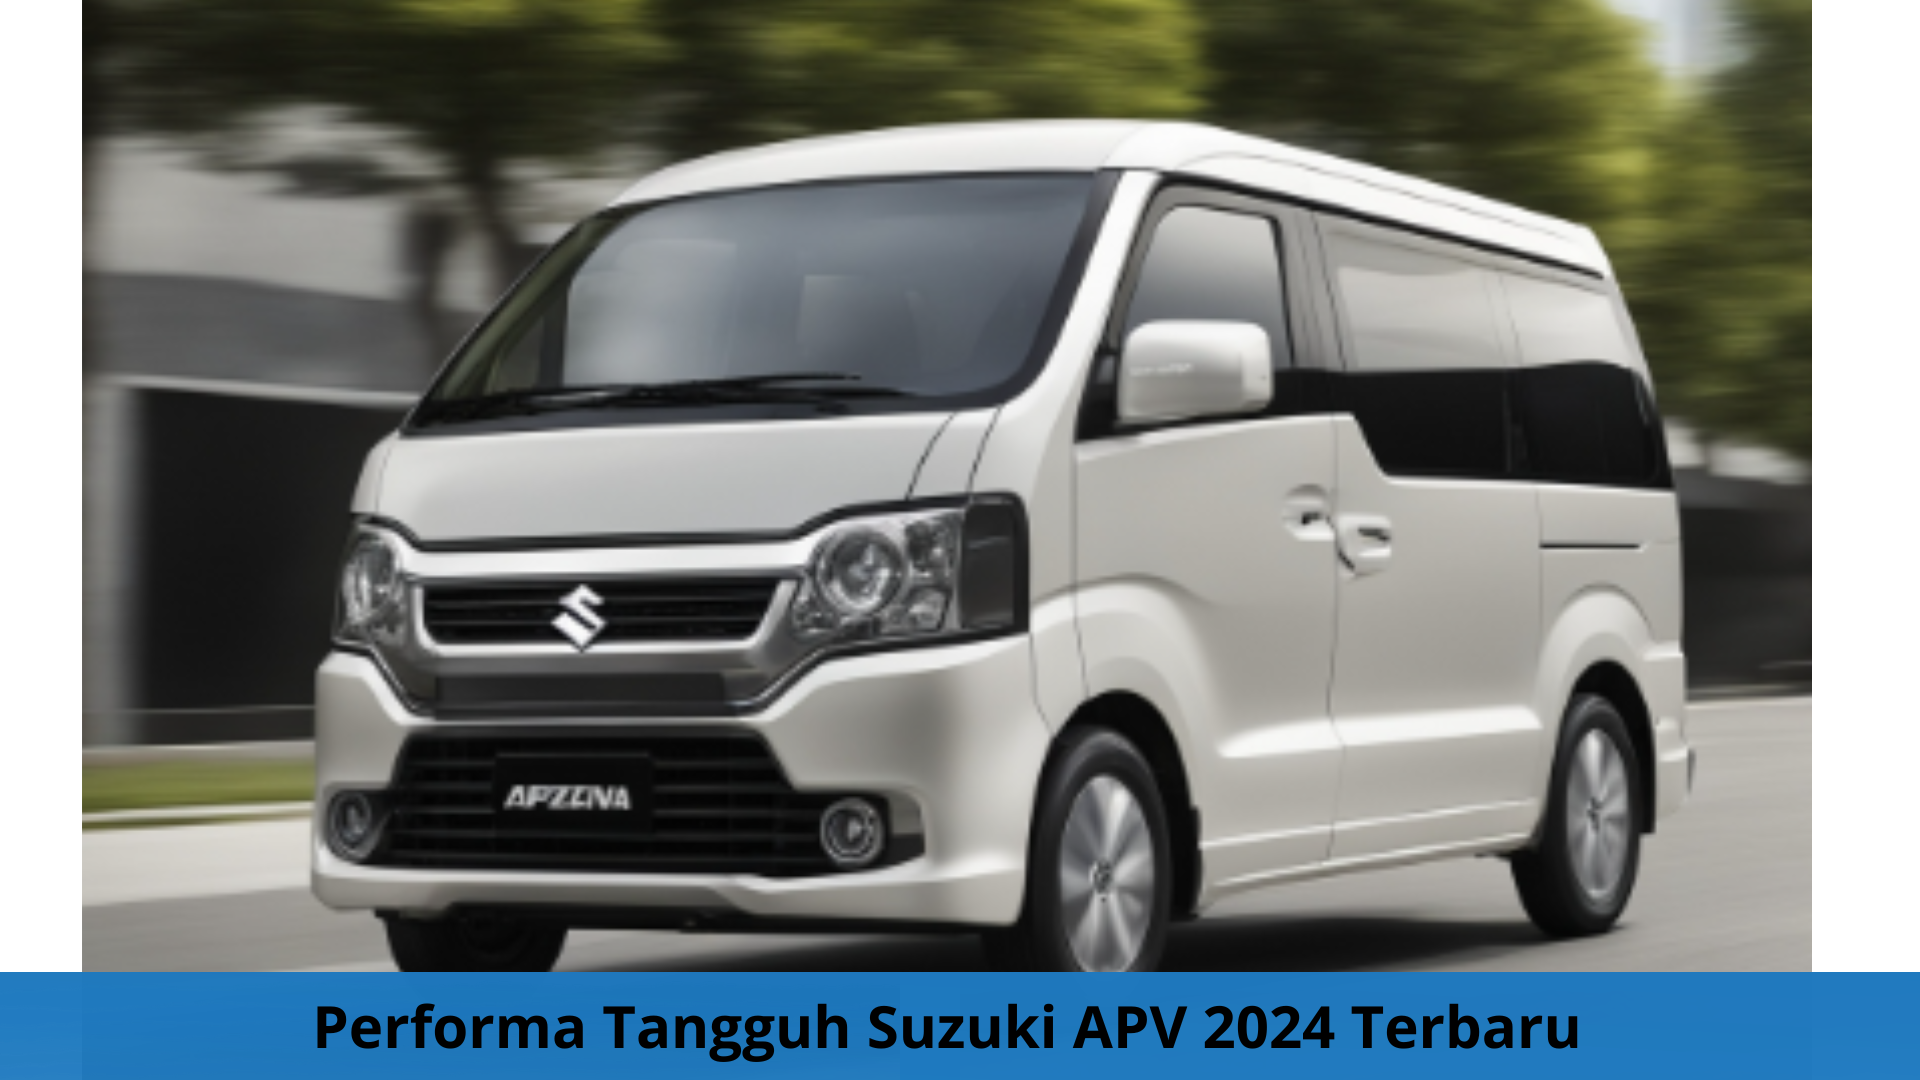 Performa Tangguh Suzuki APV 2024 Terbaru Siap Antar Healing Libur Awal Puasa Anda dengan Nyaman dan Tenang